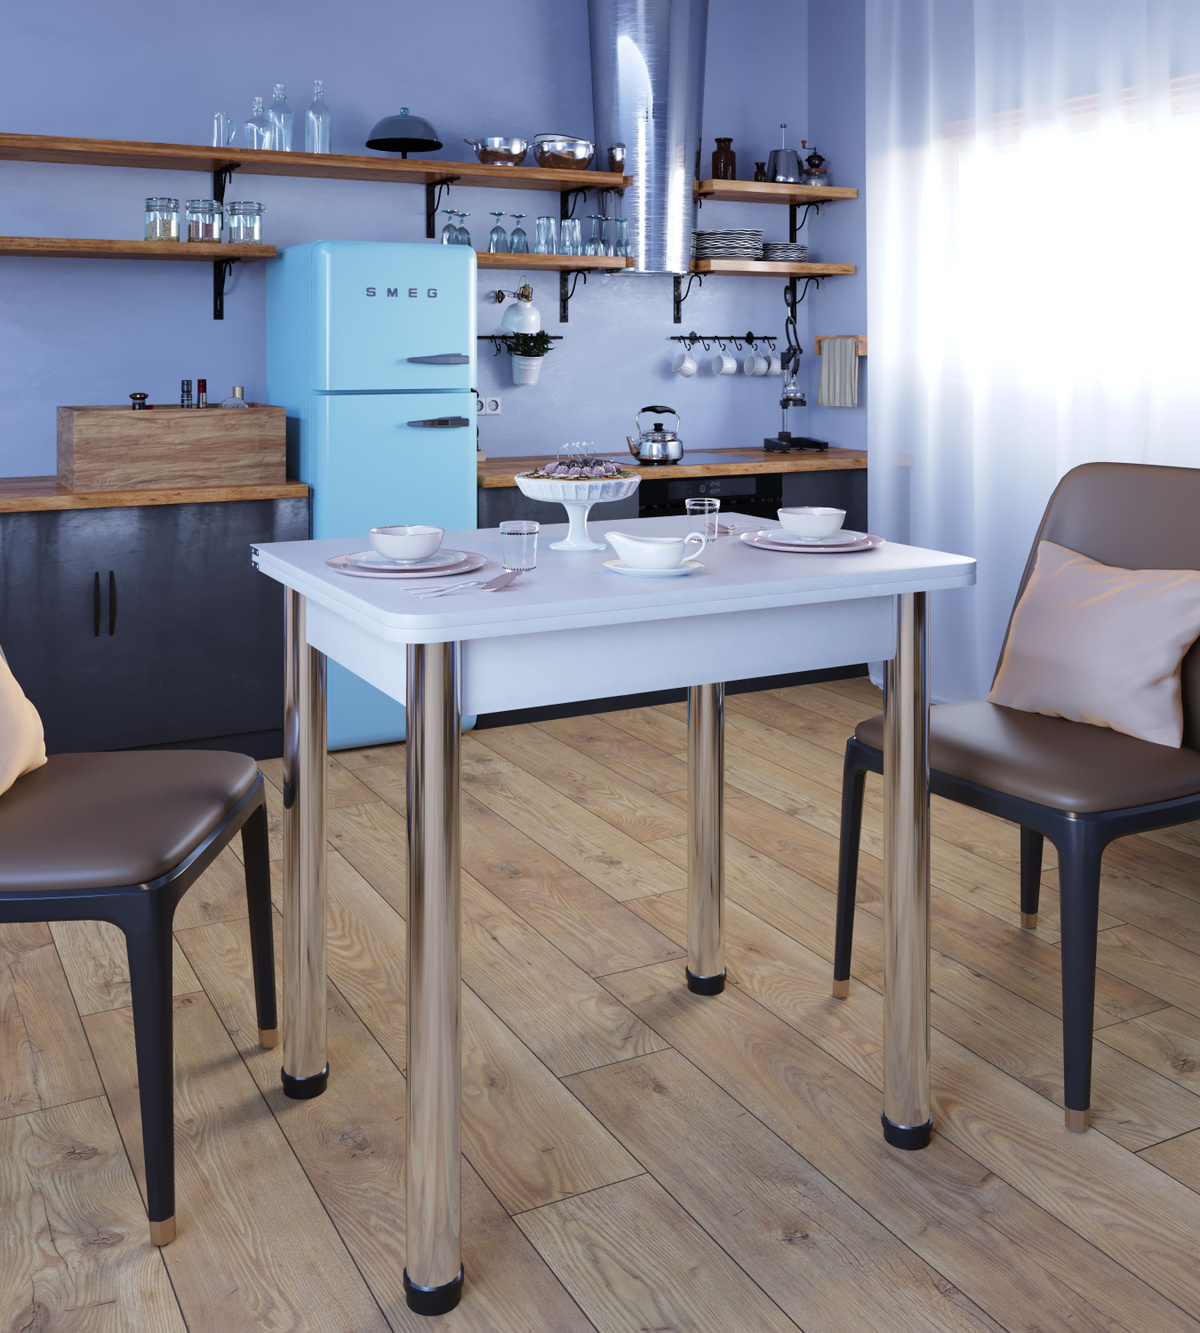 Красивый ломберный стол отлично впишется в интерьер современной квартиры. Он идеально подойдет обладателям небольшой кухни: в собранном виде сэкономит пространство, а в разобранном позволит разместить до шести гостей.